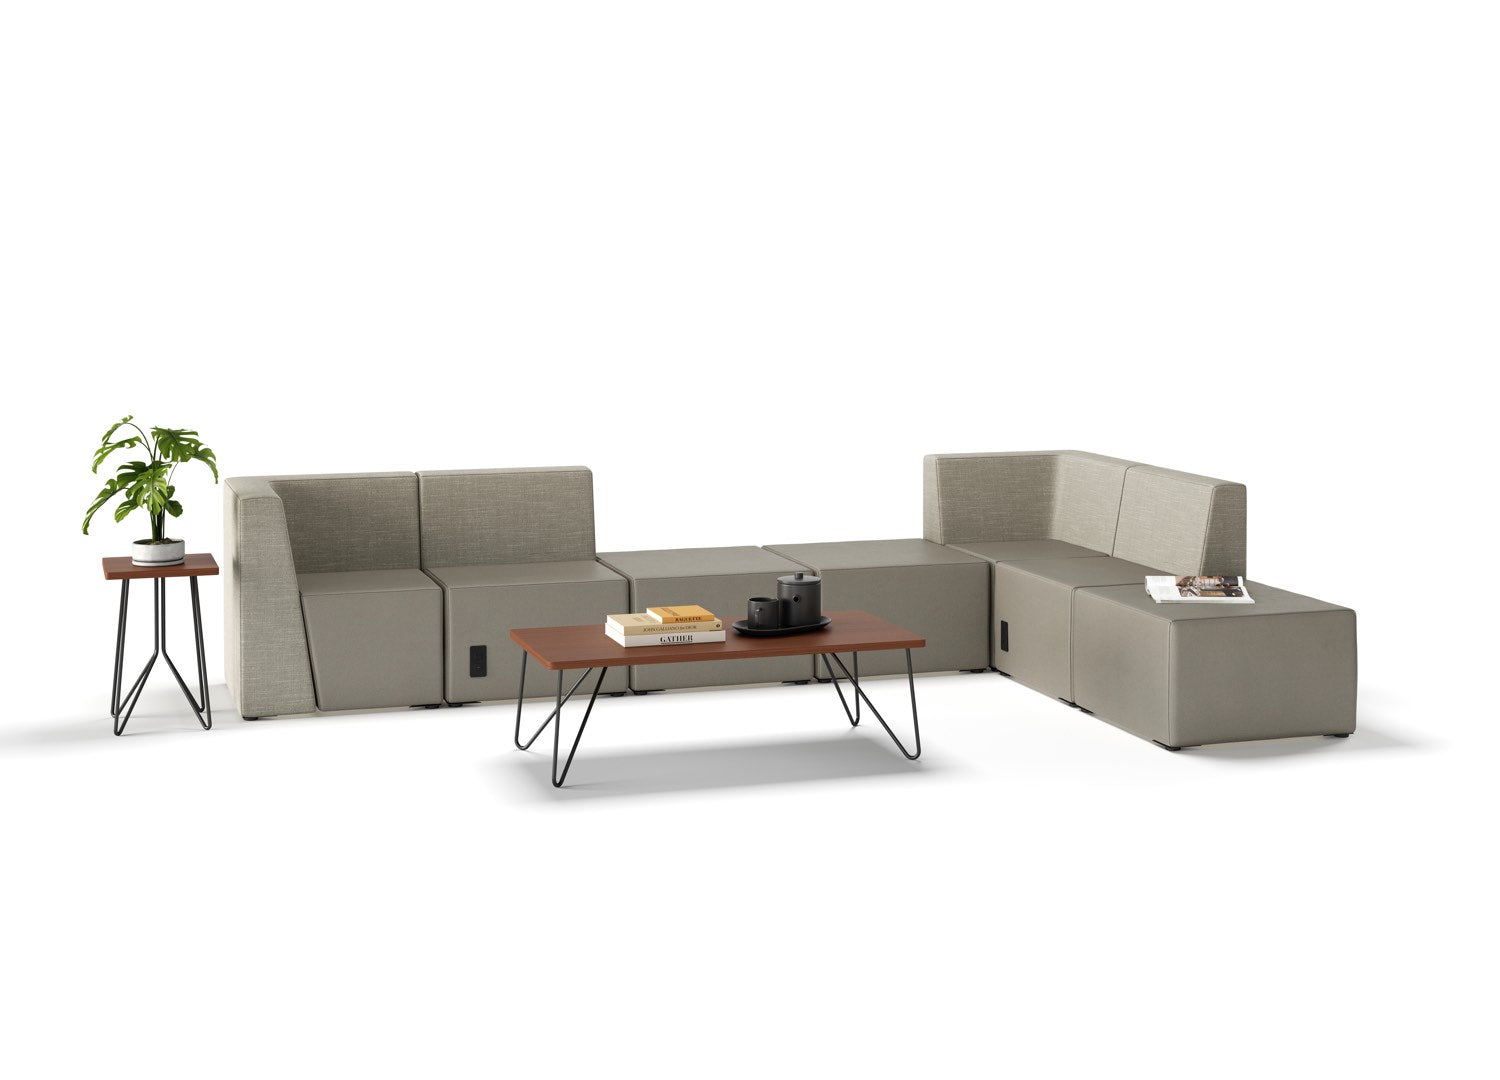 Modular Lounge Seating - Single Segment